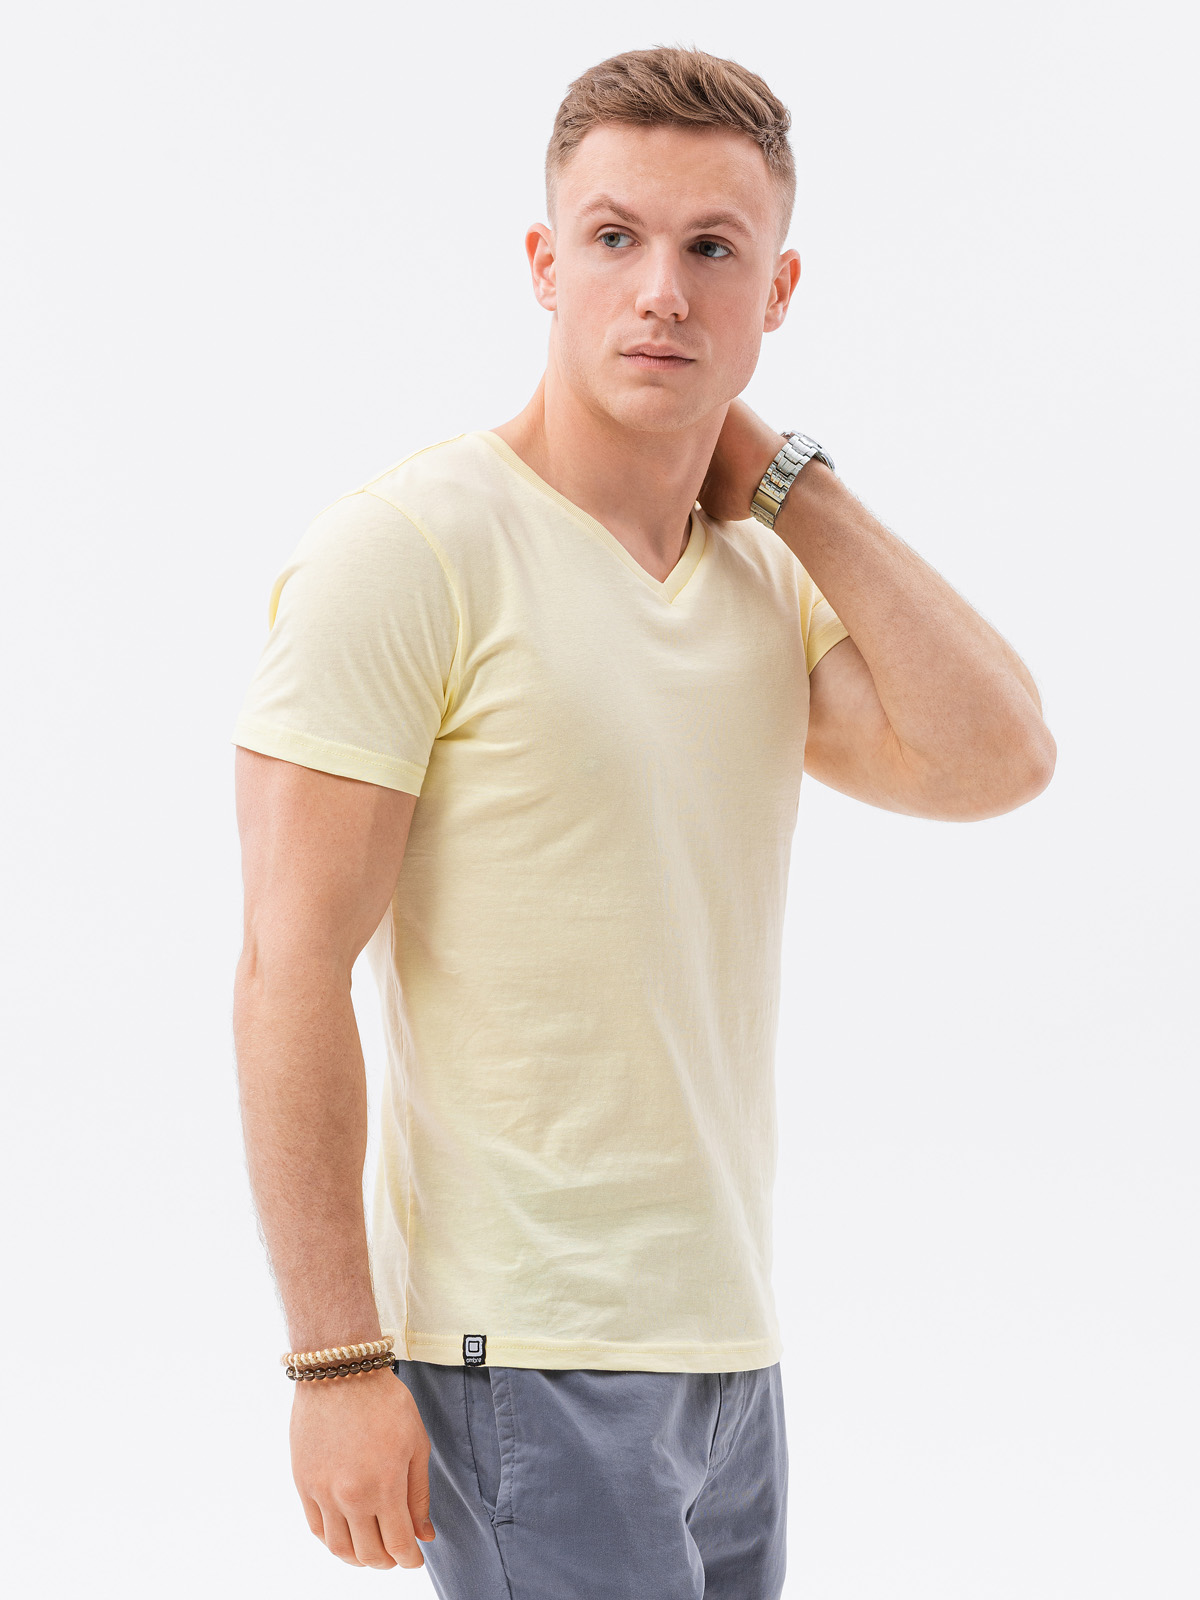 V Neck T Shirts For Men, Wholesale Unisex Clothing